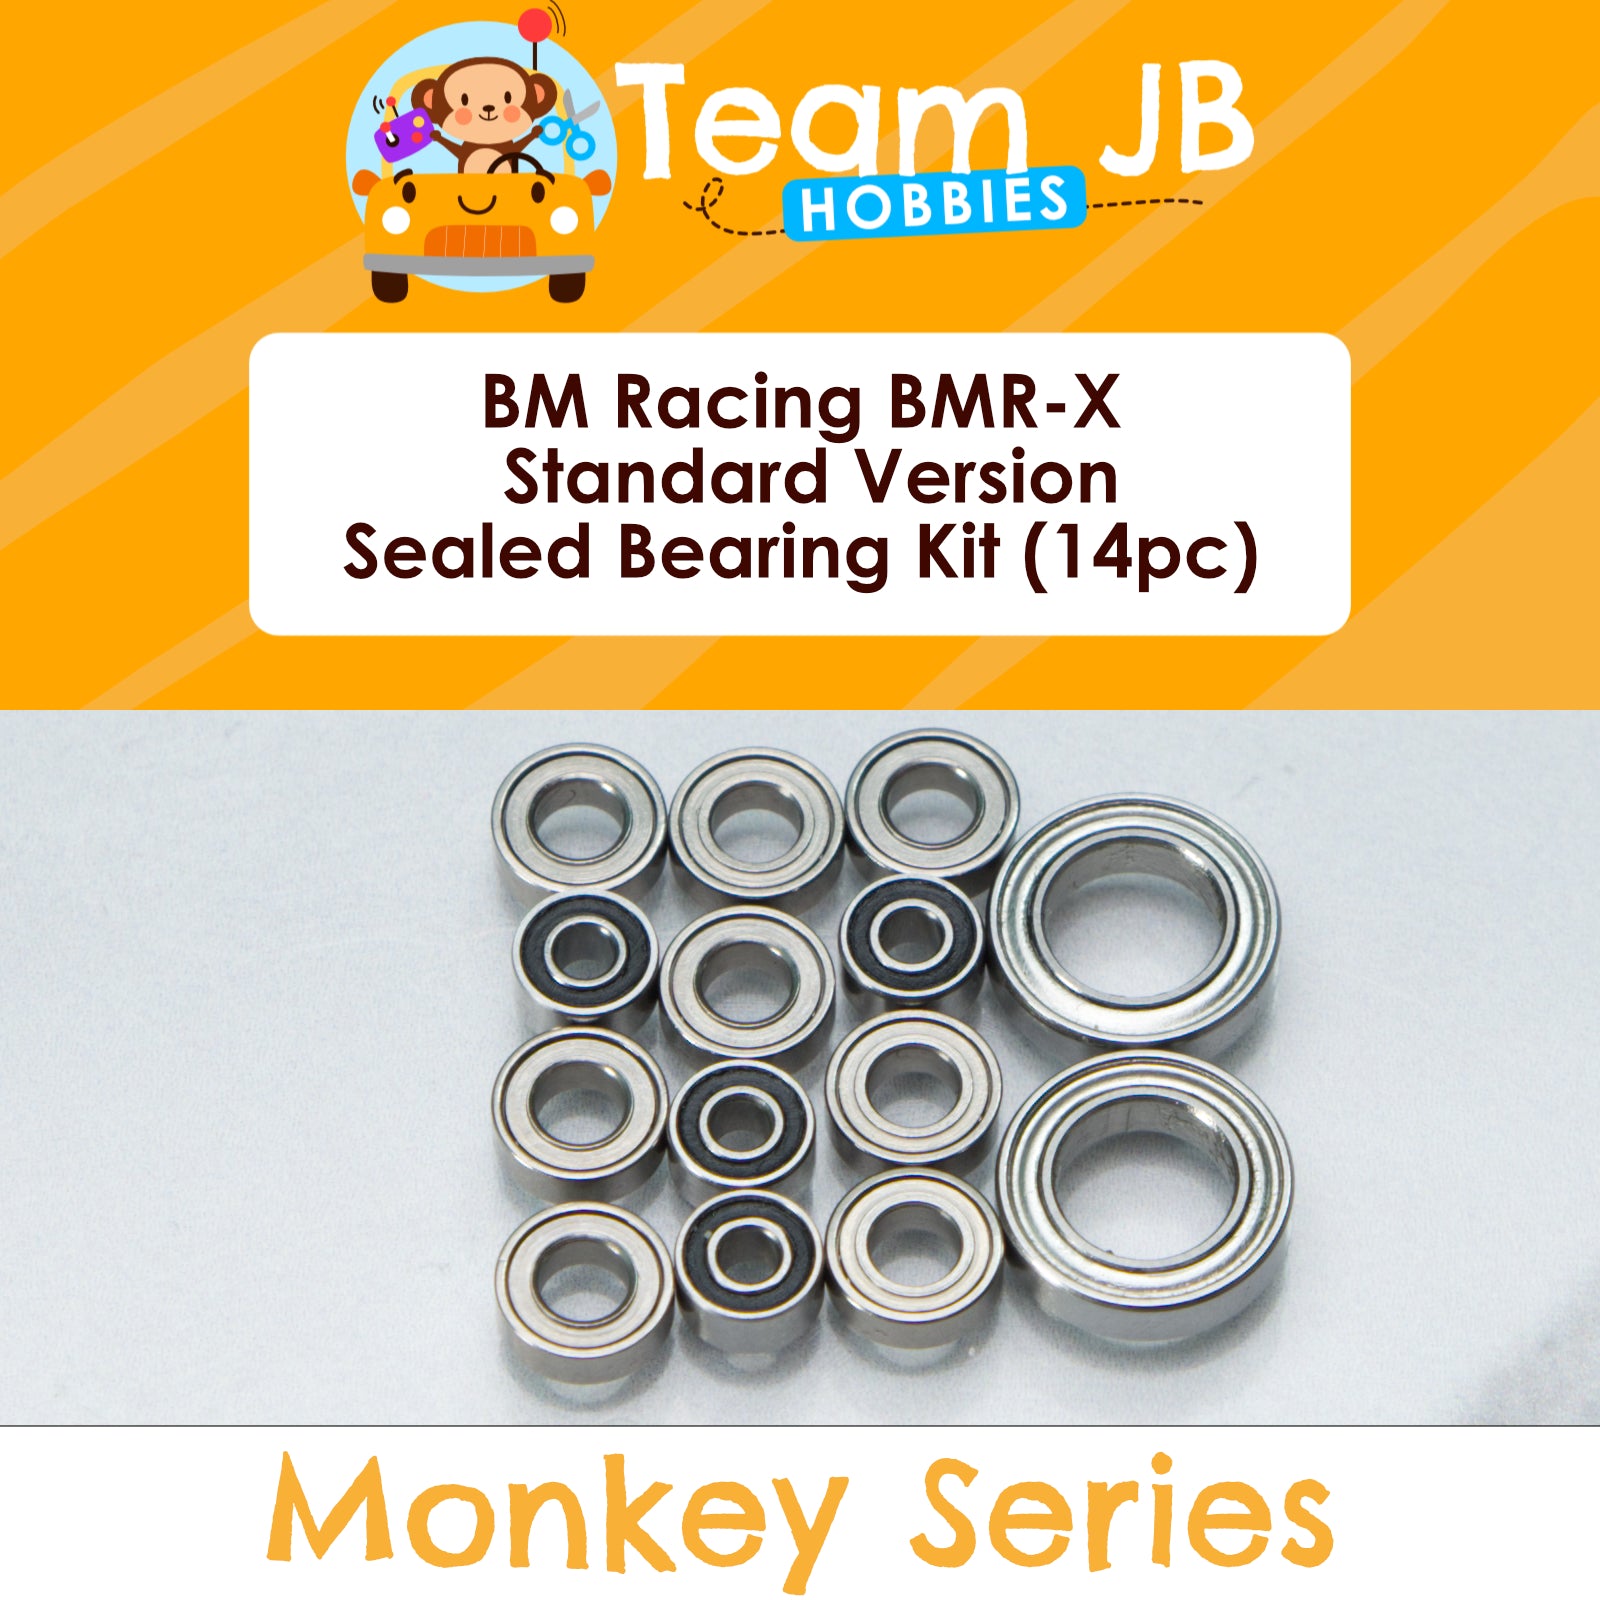 BM Racing BMR-X Standard Version - Sealed Bearing Kit